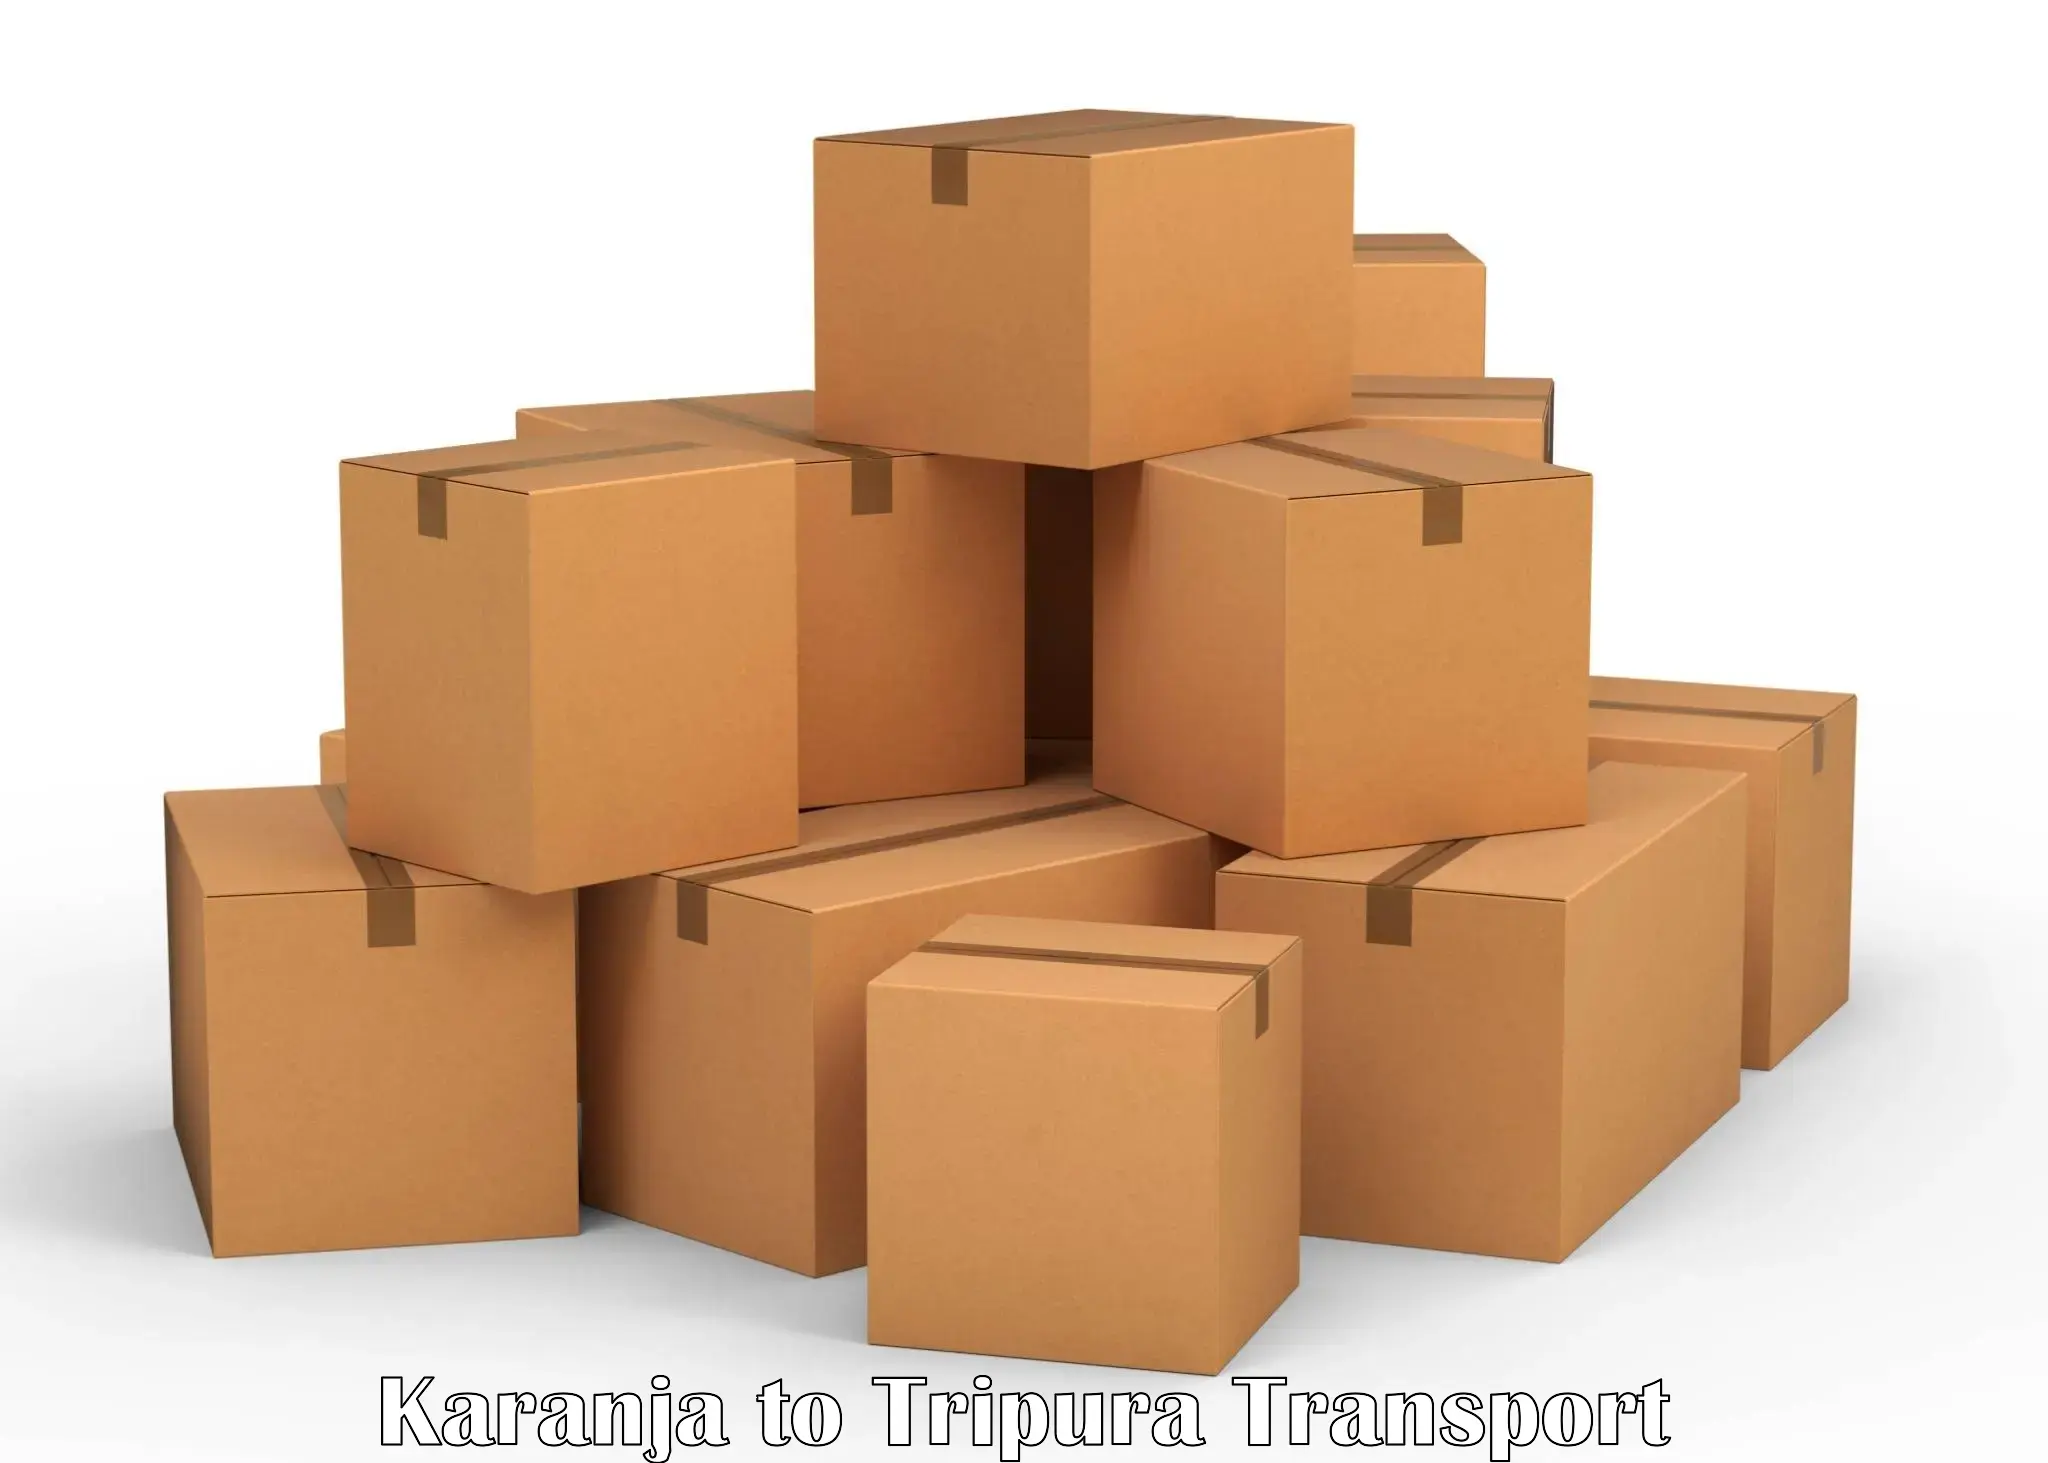 Furniture transport service in Karanja to Udaipur Tripura